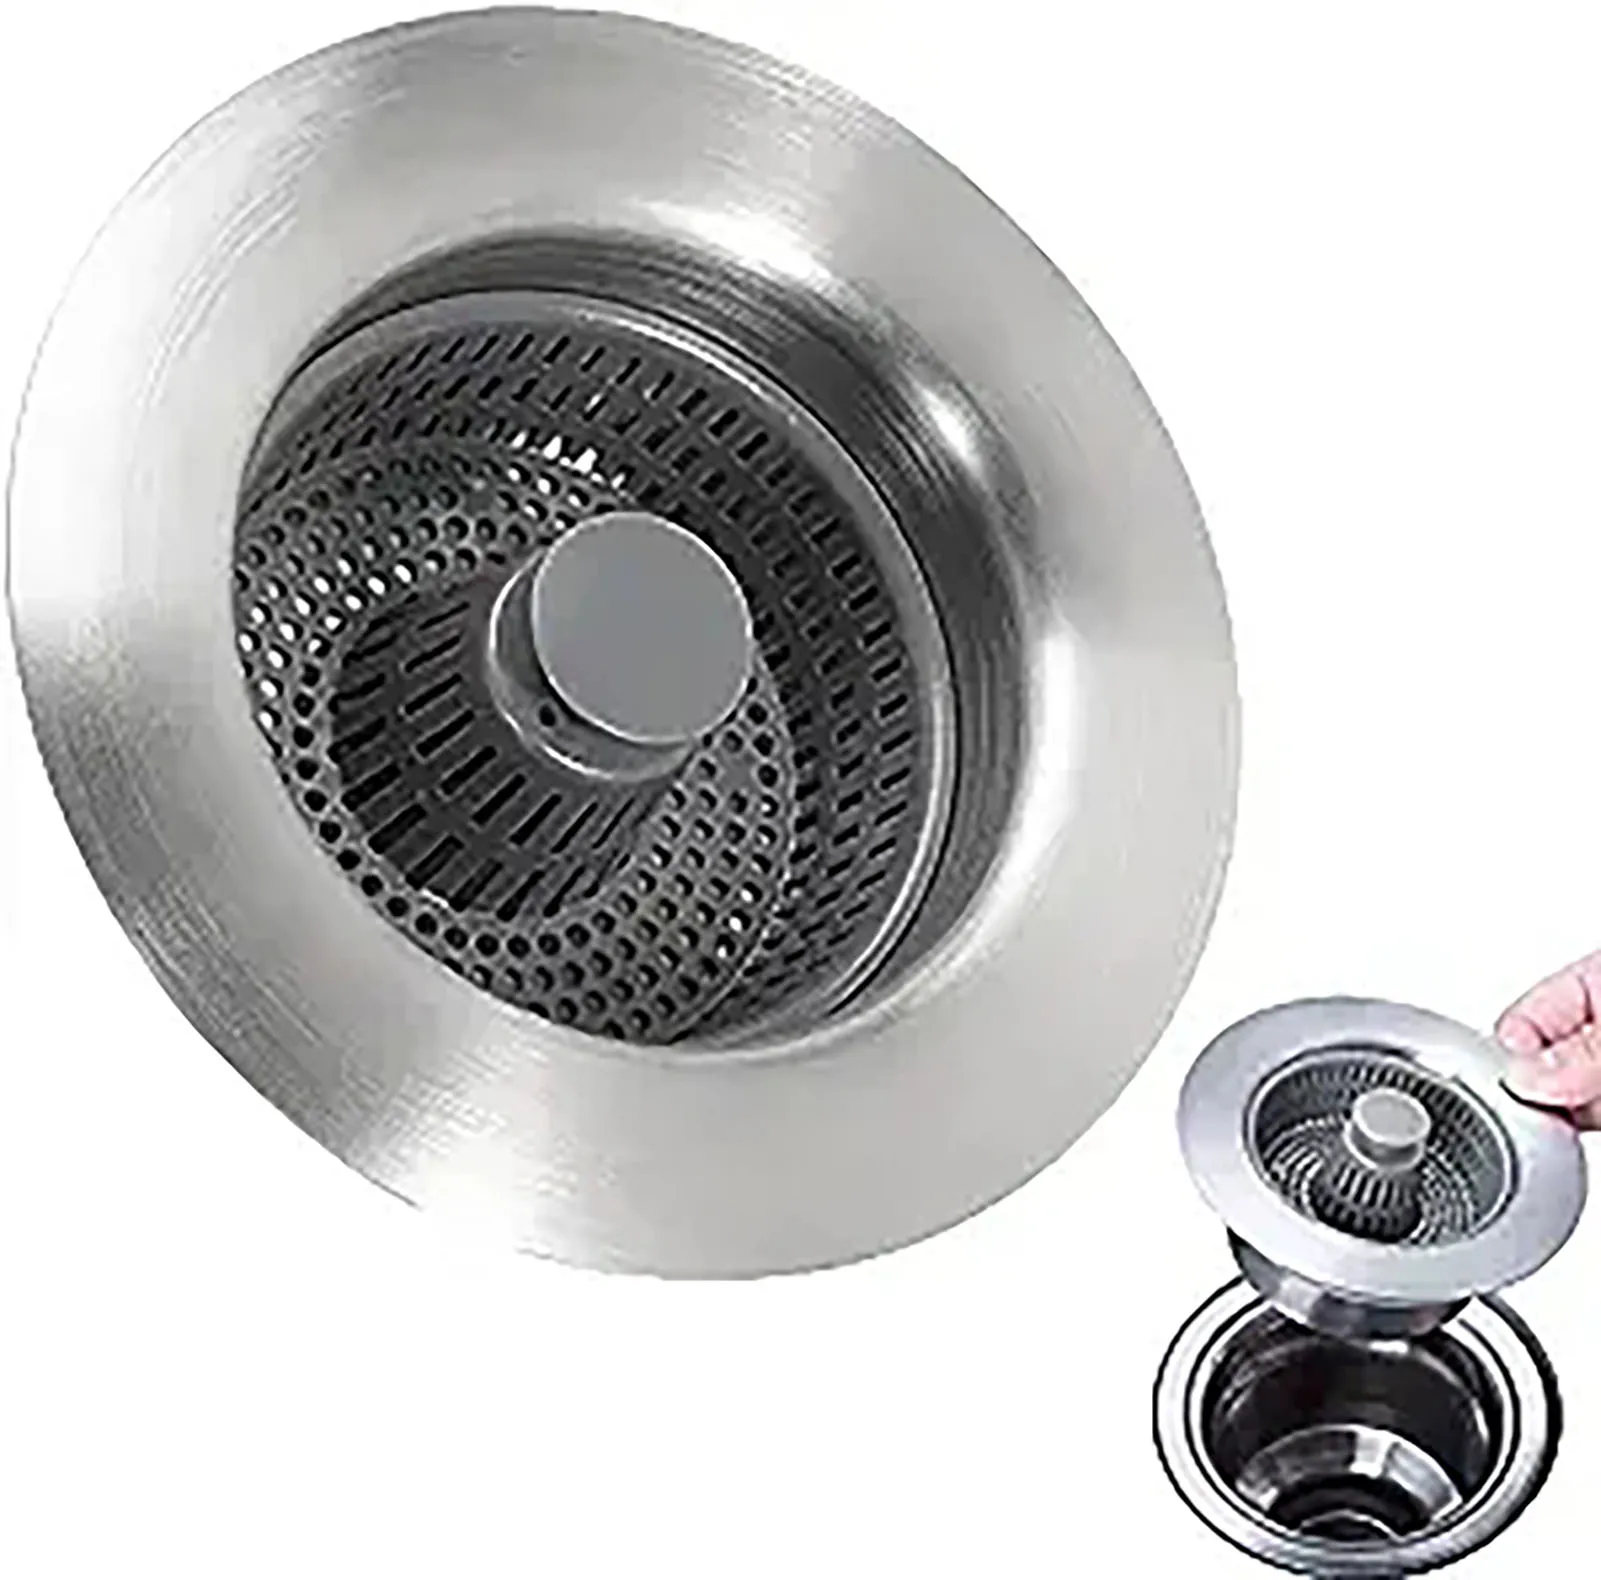 

Spring Filter for Sink Seal Prevent Clogging Odor-Proof Filter for Kitchens Restaurants Sewer